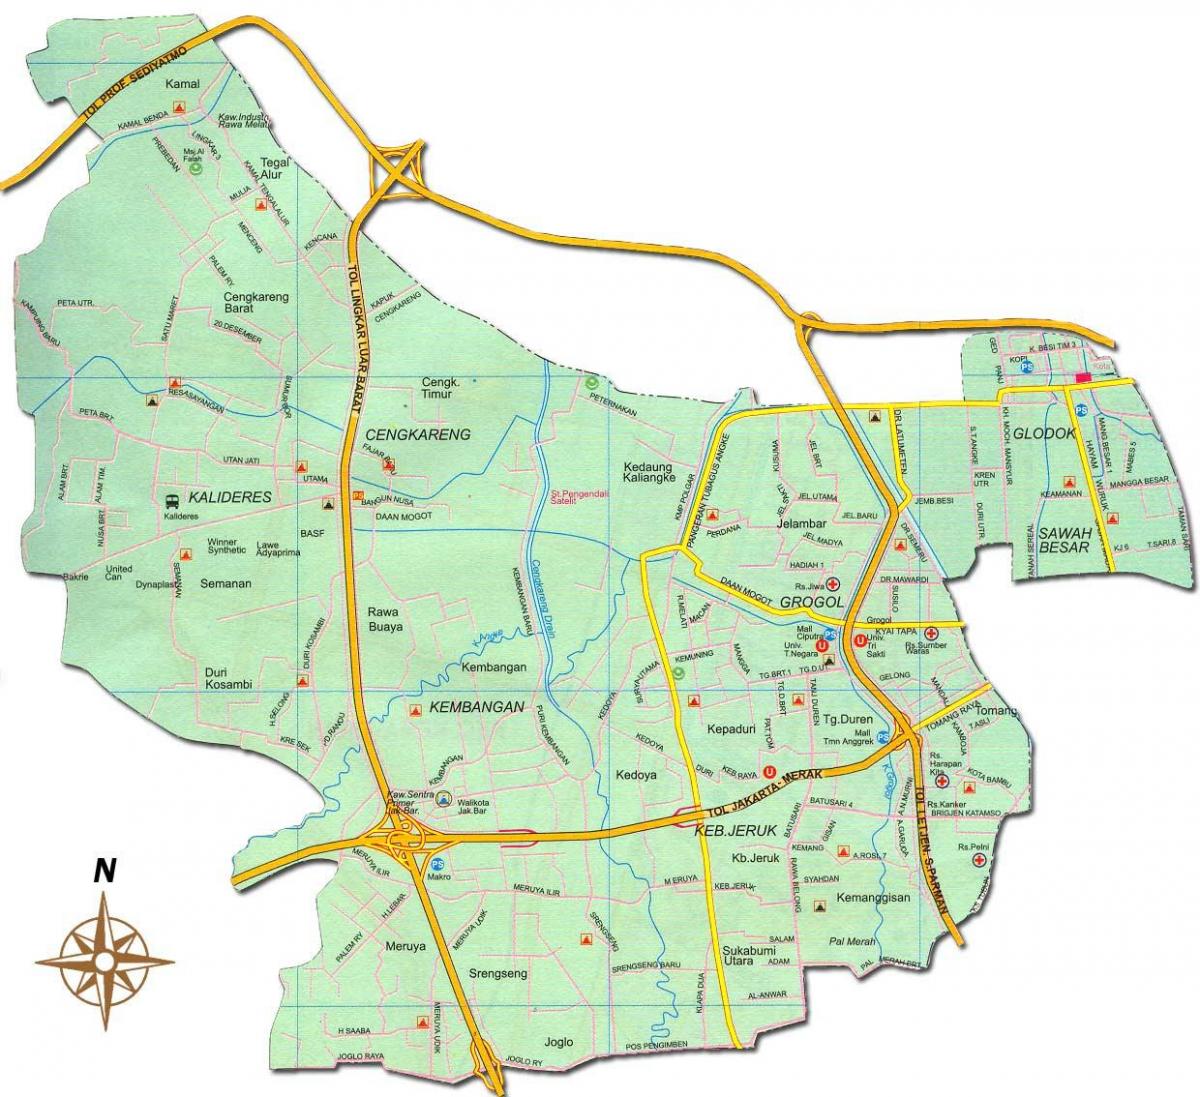 Џакарта barat мапа